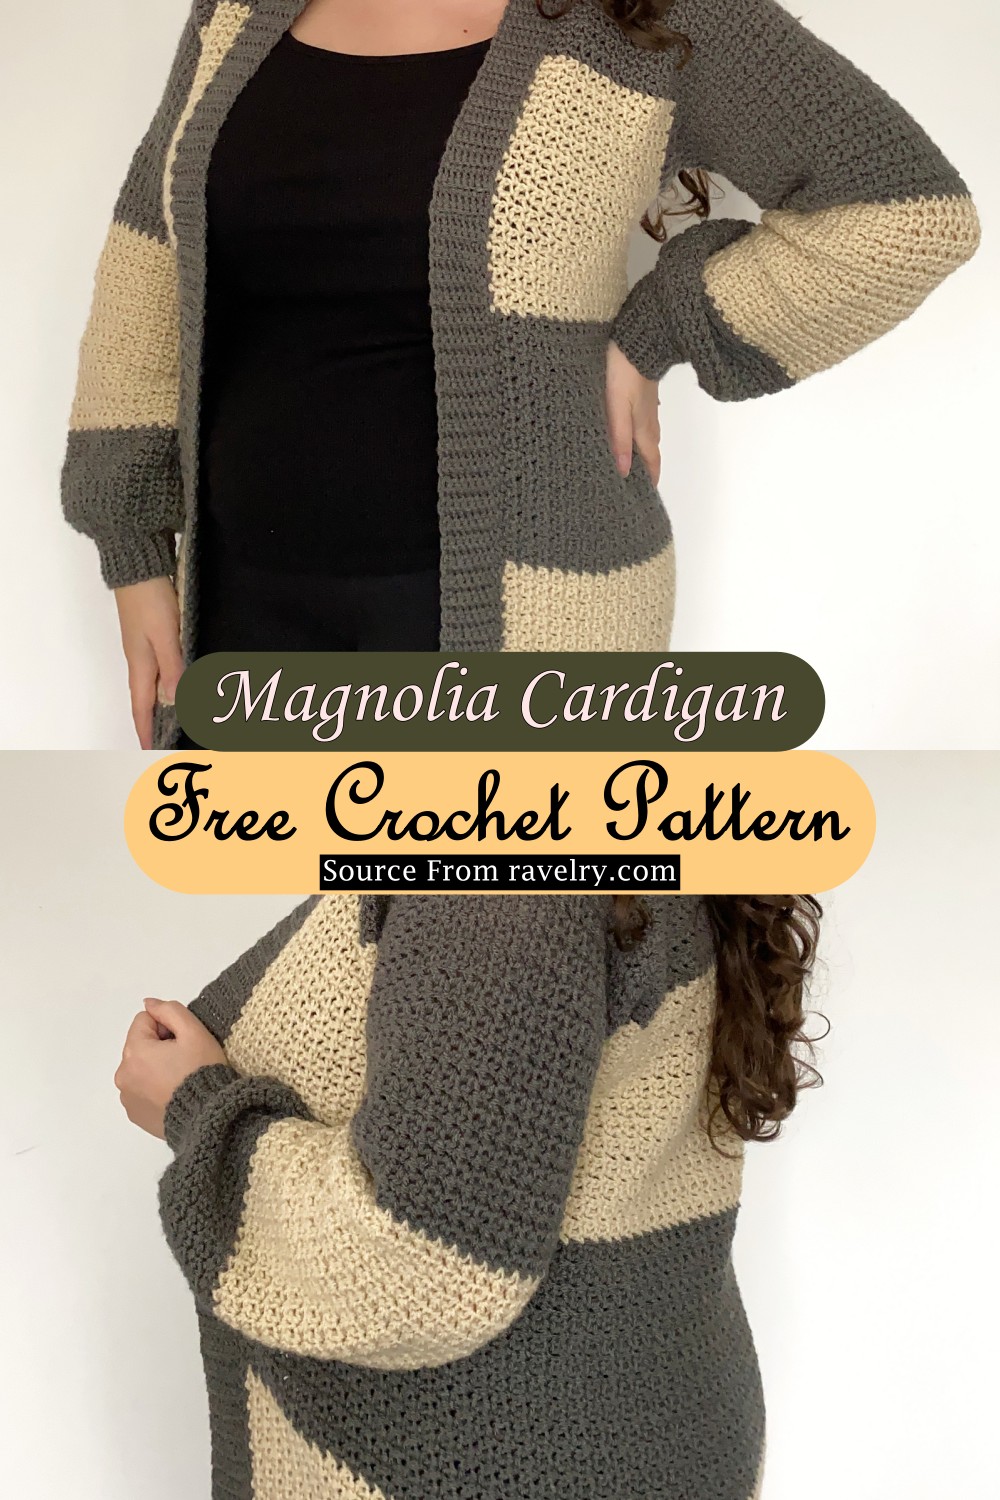 Magnolia Cardigan